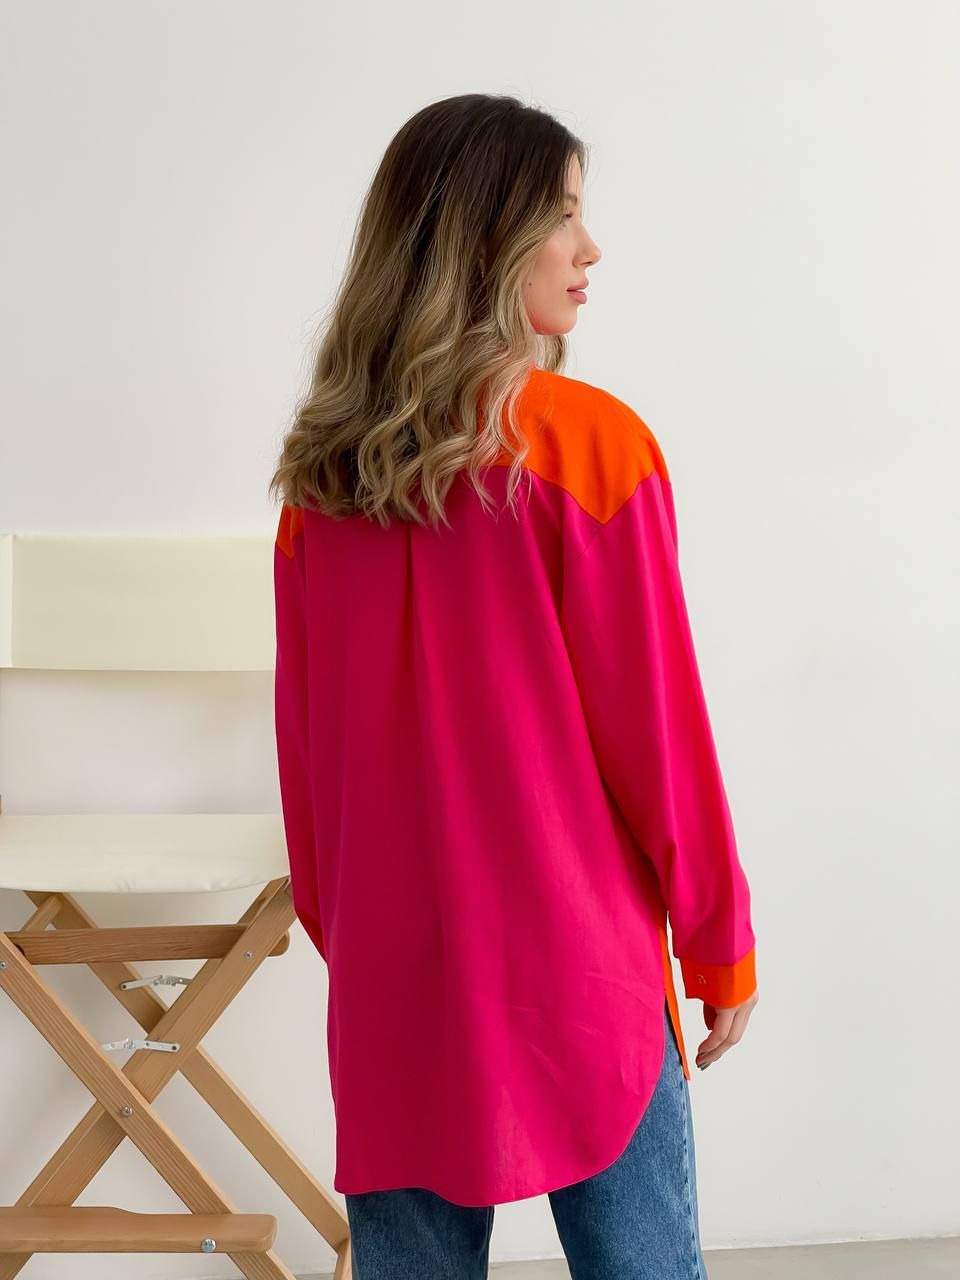 Рубашка оверсайз из льна двухцветная малина+оранжевый, Малиновый, универсальный (S-L)